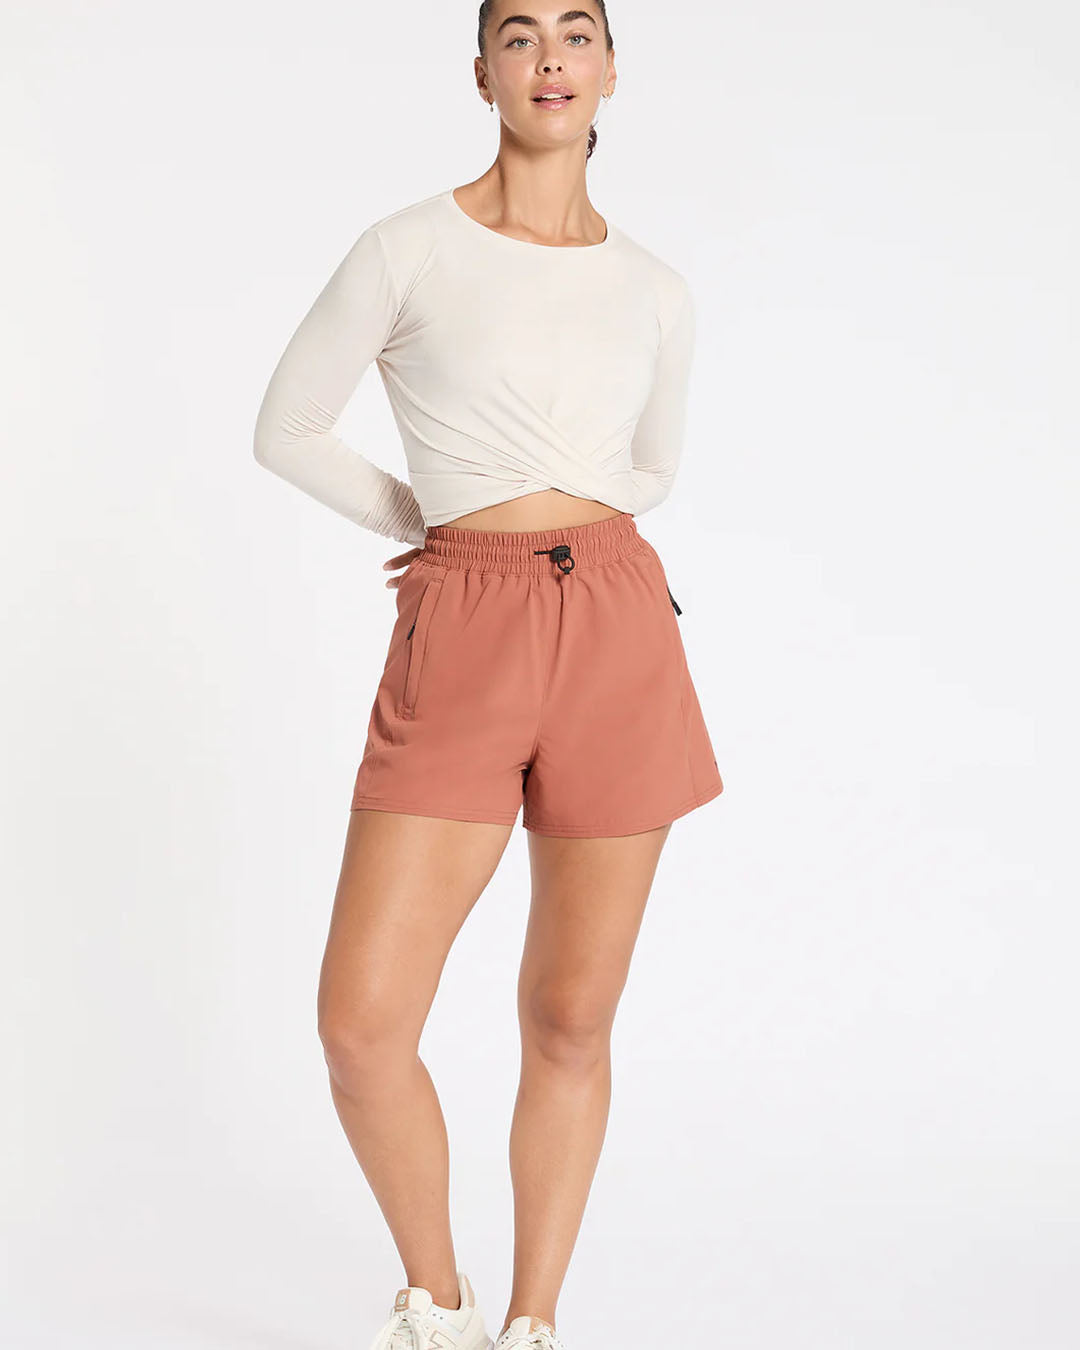 Explore More Rec Short - Cinnamon Shorts by Nimble - Prae Store